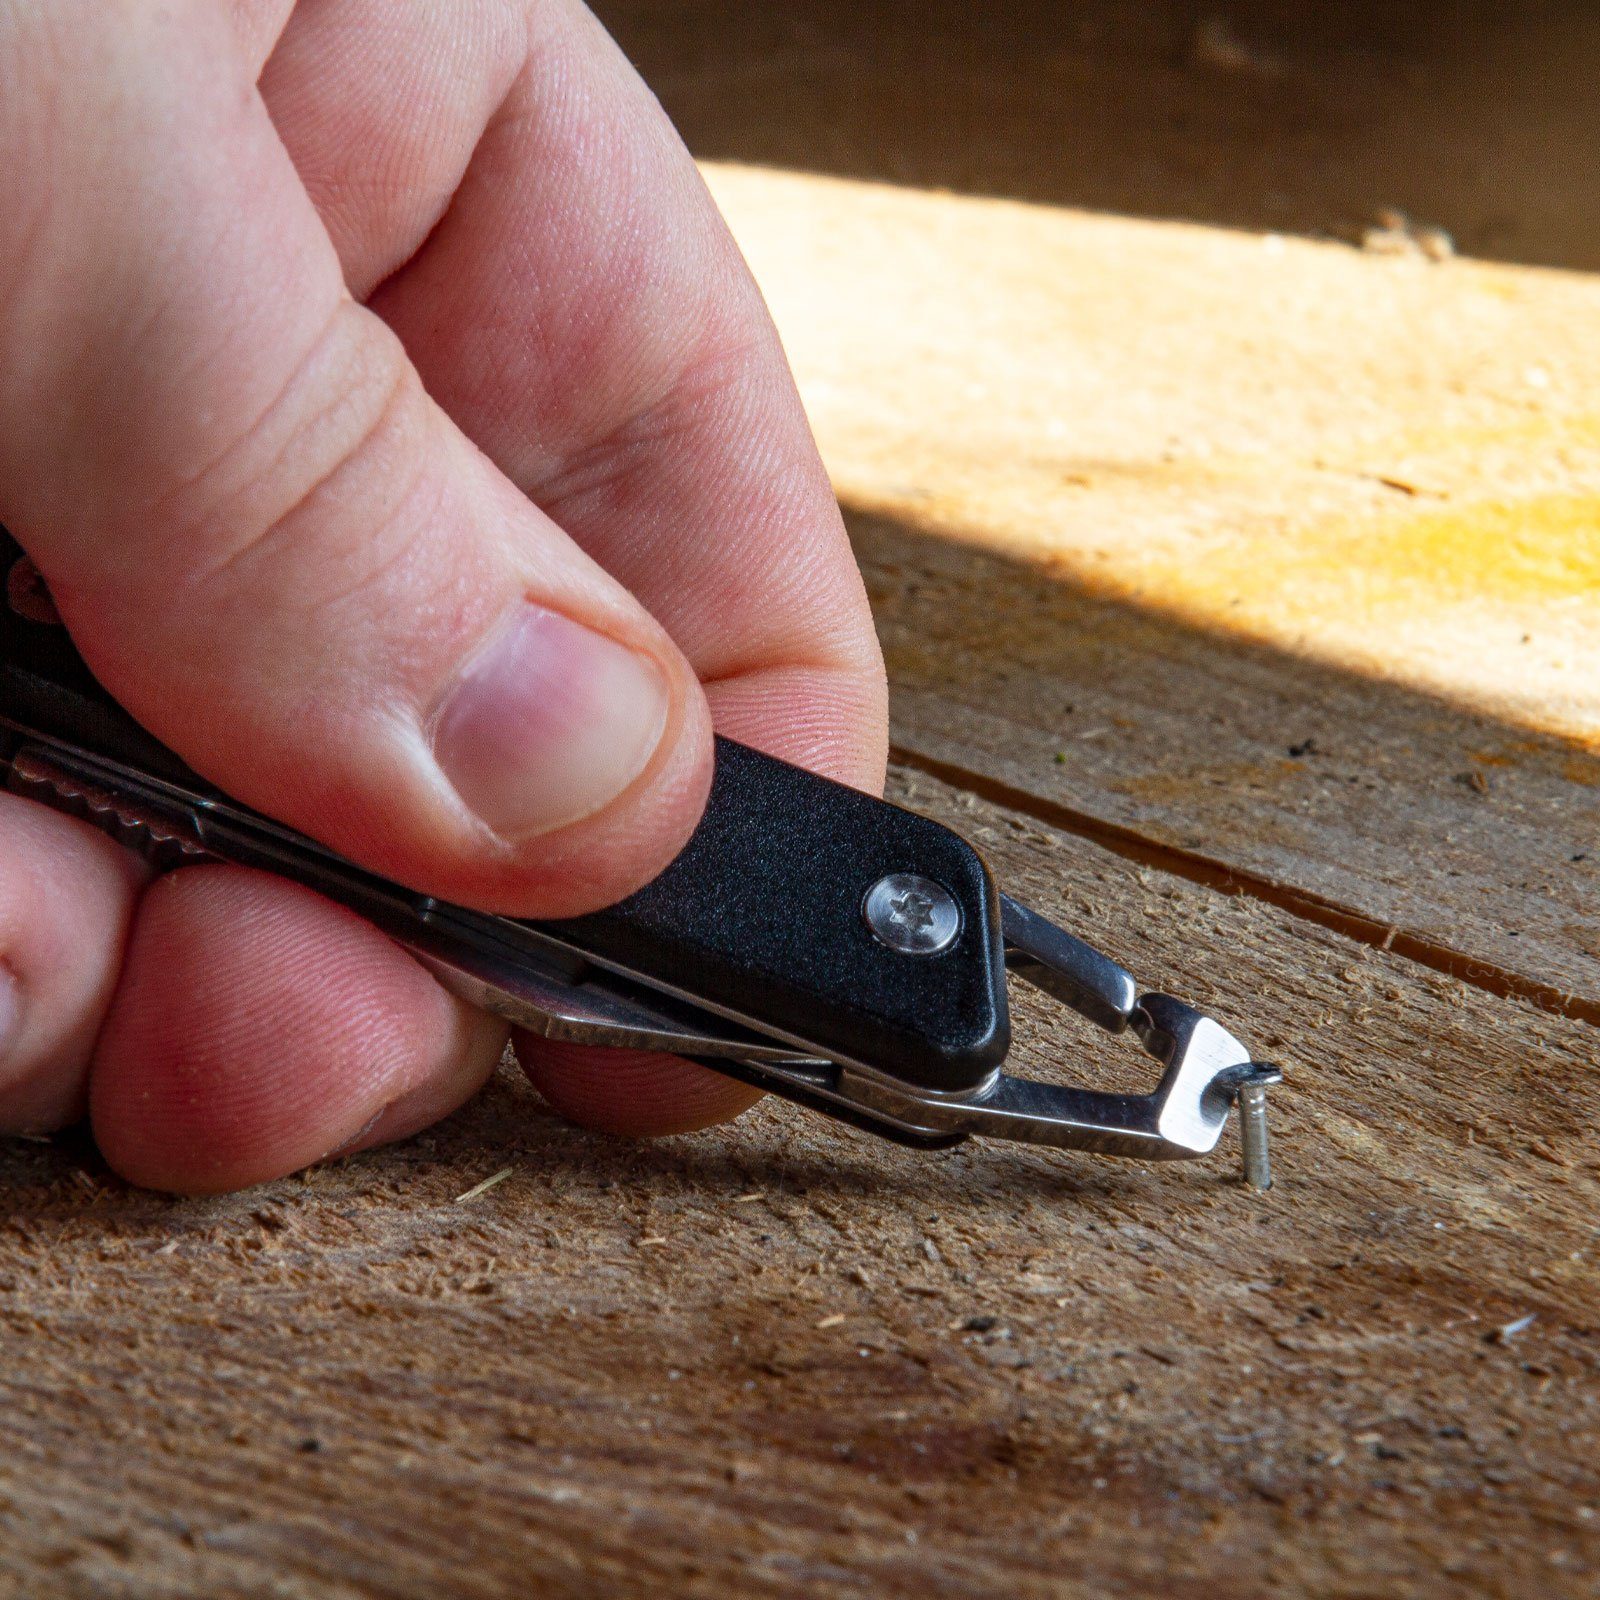 True Tool Chain Schlüsselanhänger Taschenmesser Key Mini Utility Messer Taschenmesser Knife, schwarz